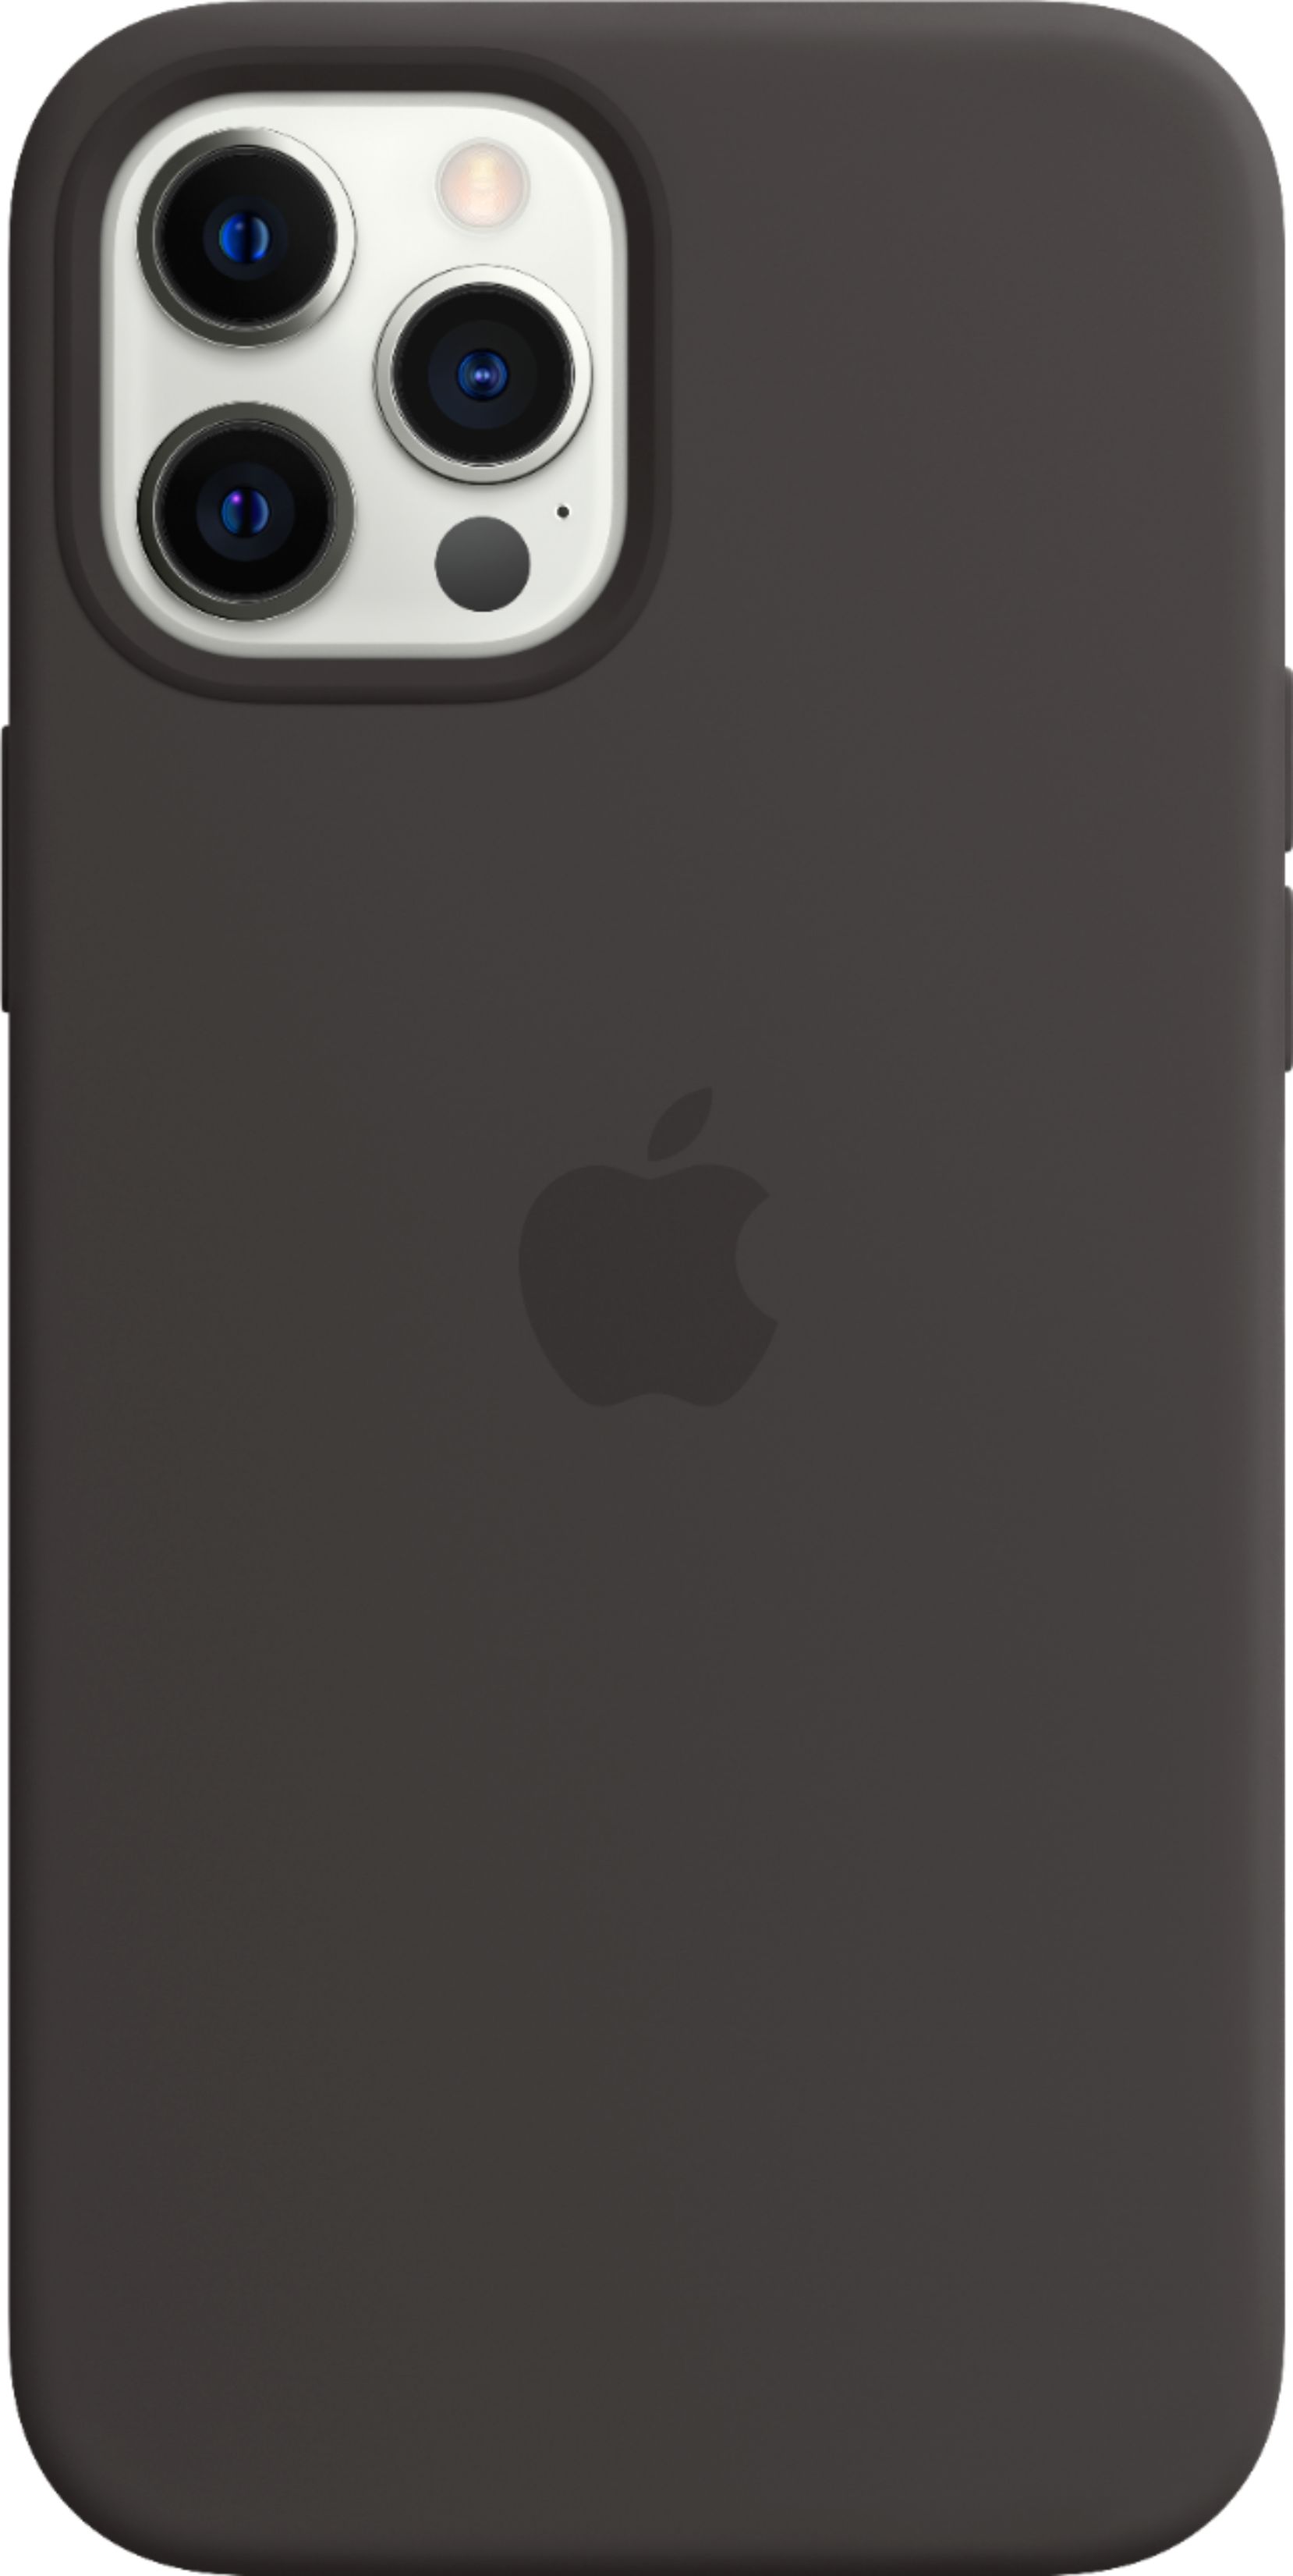 スマートフォン/携帯電話 スマートフォン本体 Apple iPhone 12 Pro Max Silicone Case with MagSafe Black 